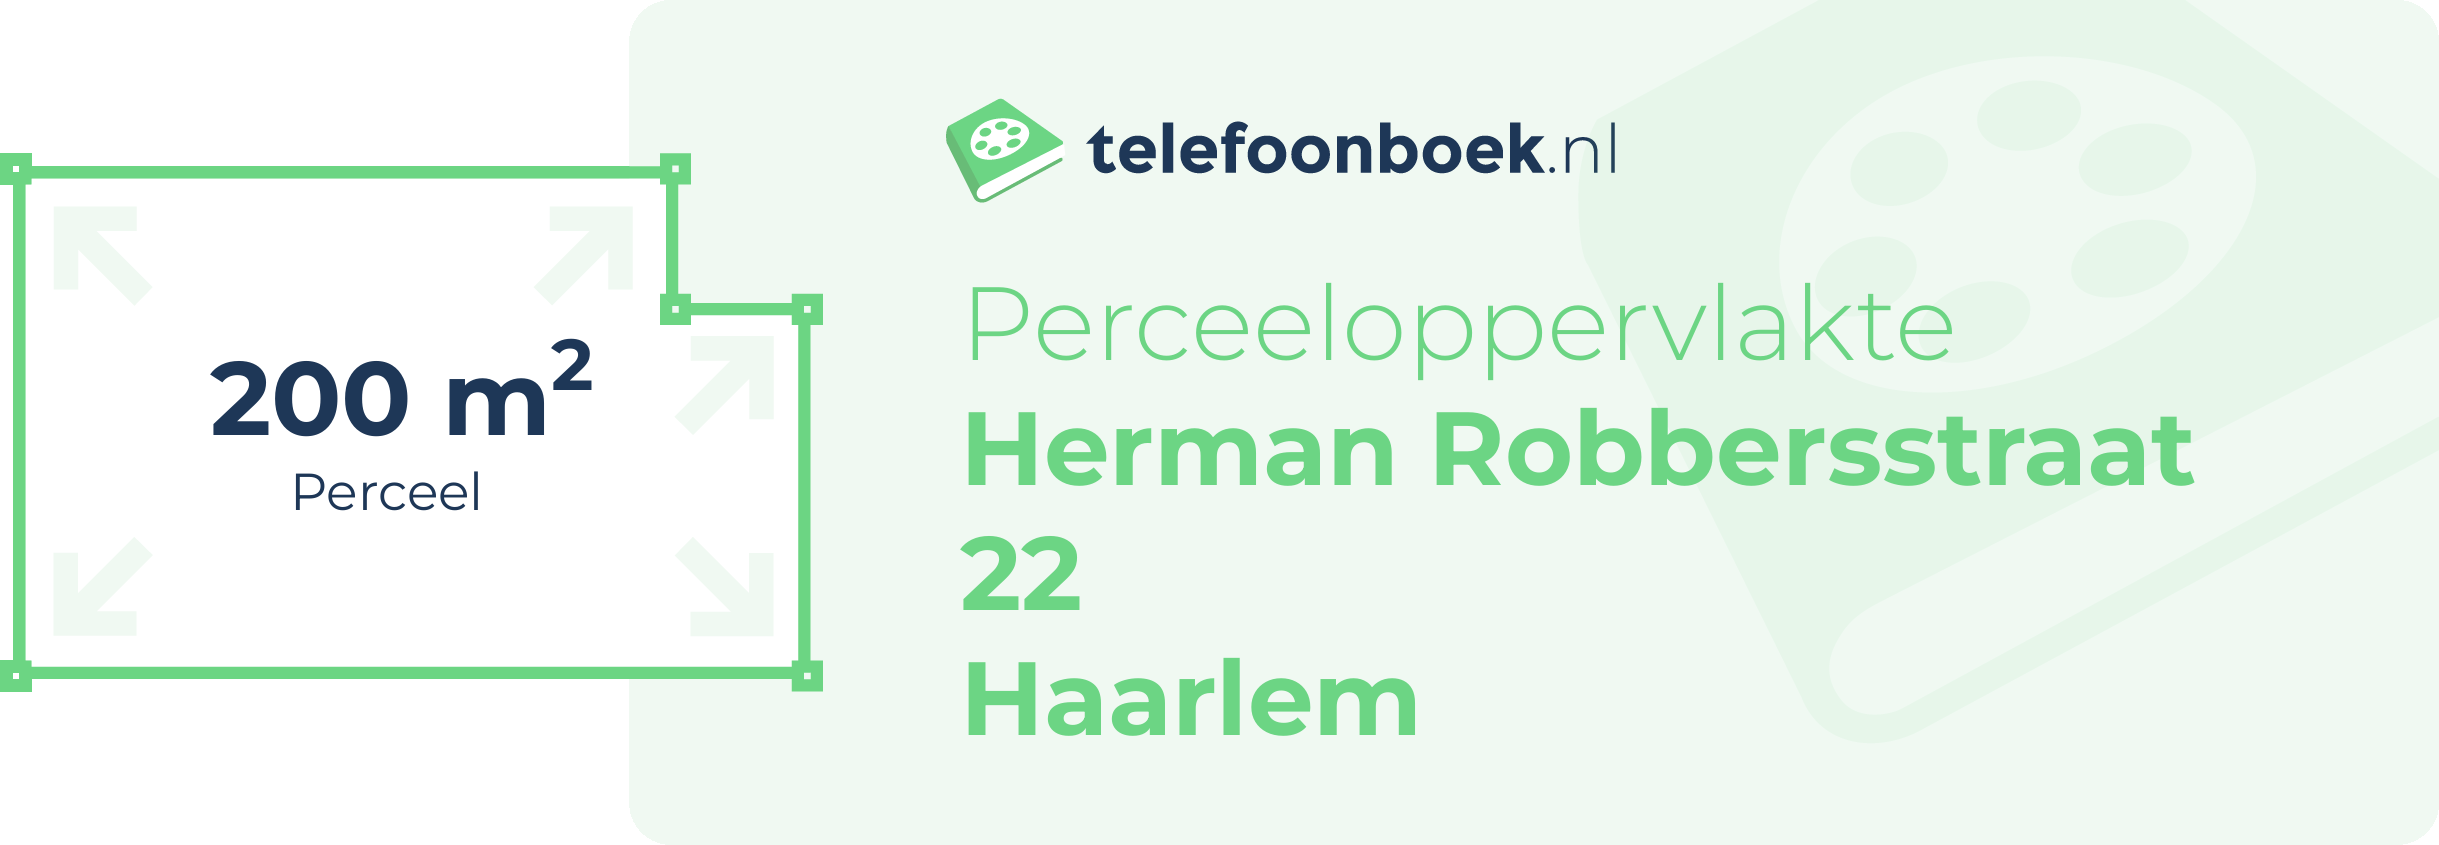 Perceeloppervlakte Herman Robbersstraat 22 Haarlem